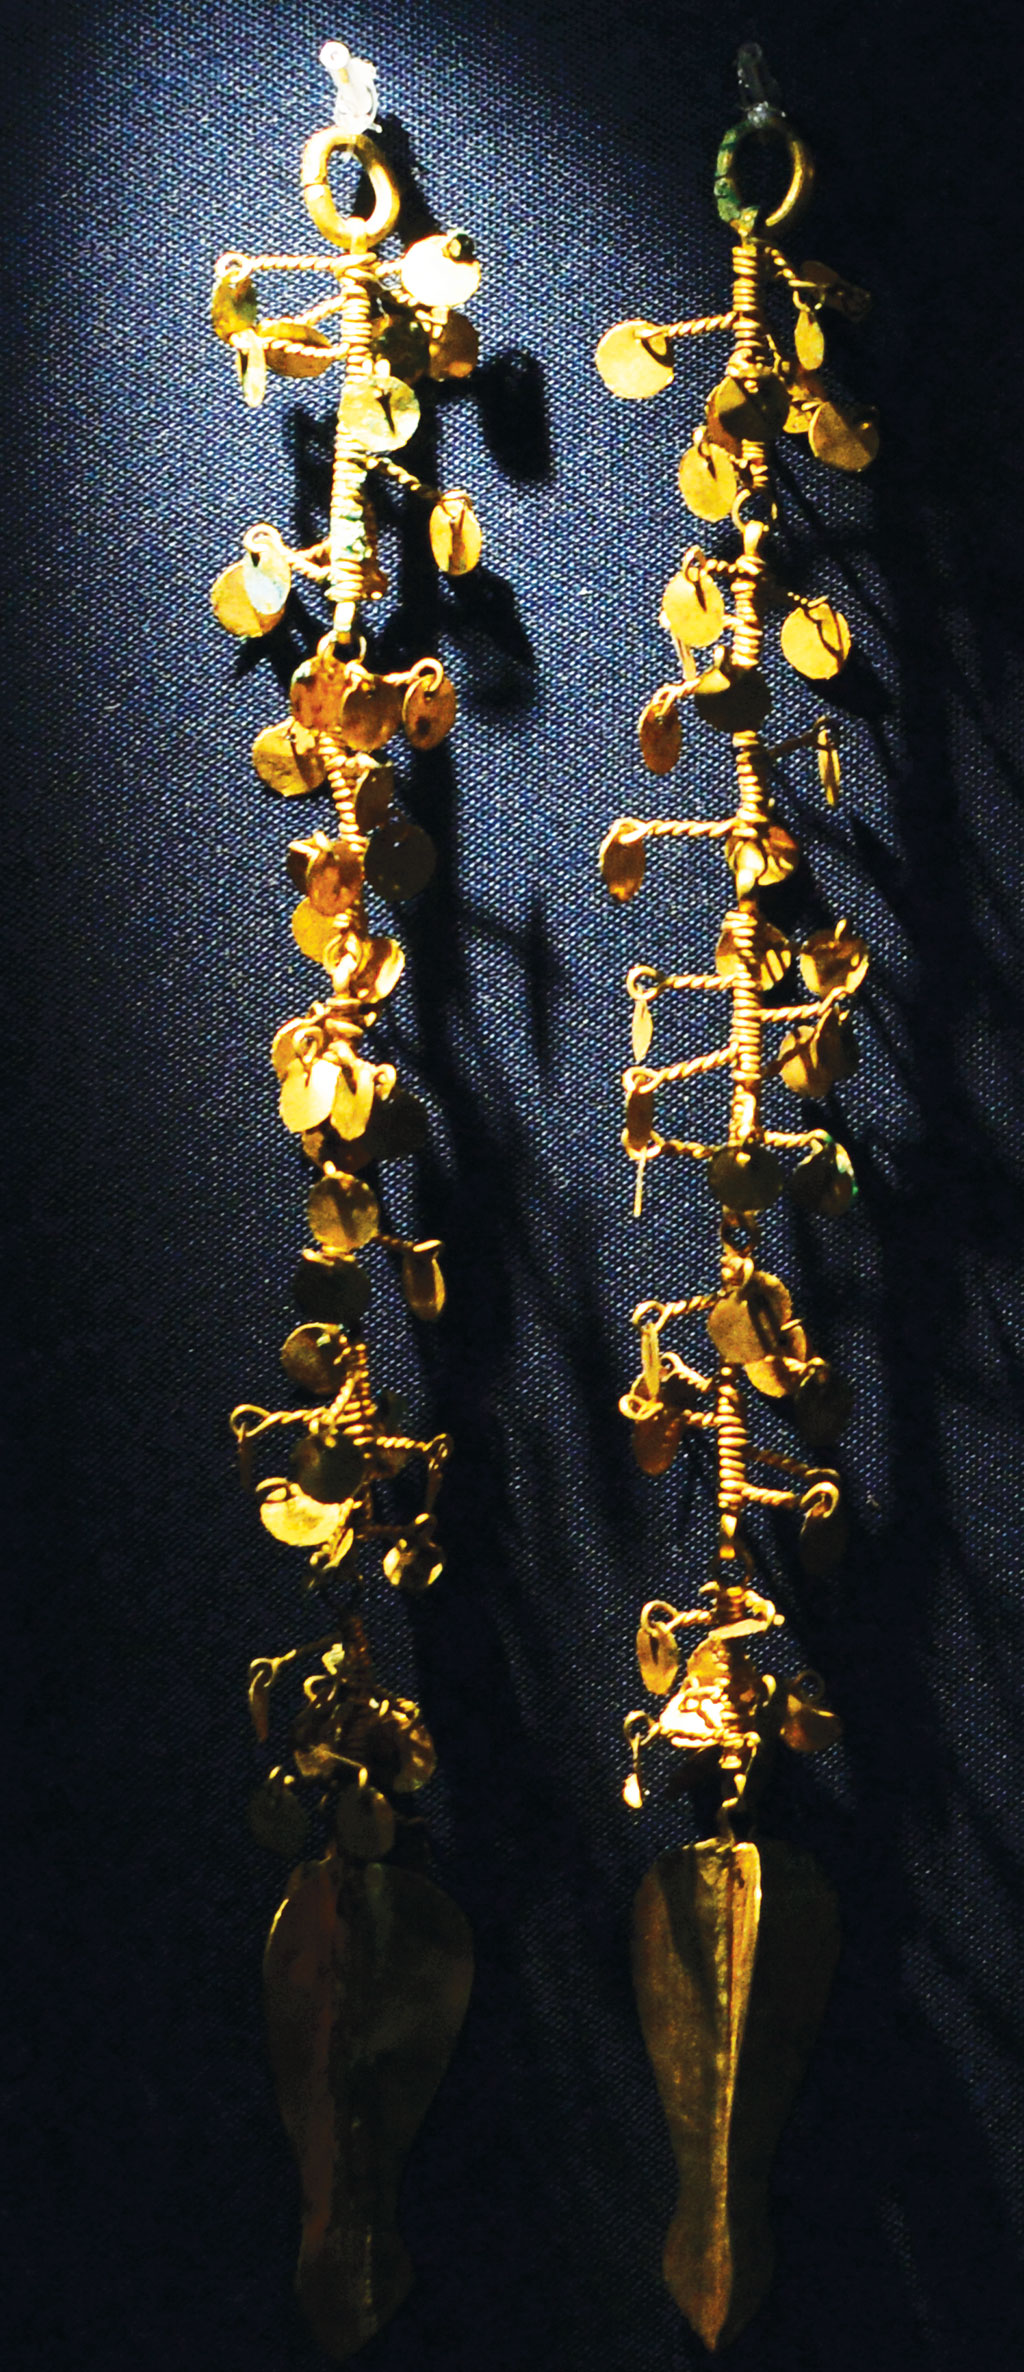 Tượng Phật Thích Ca và A Di Đà thuộc vương triều Silla được đúc bằng vàng ròng có niên đại từ 692 - 706 8